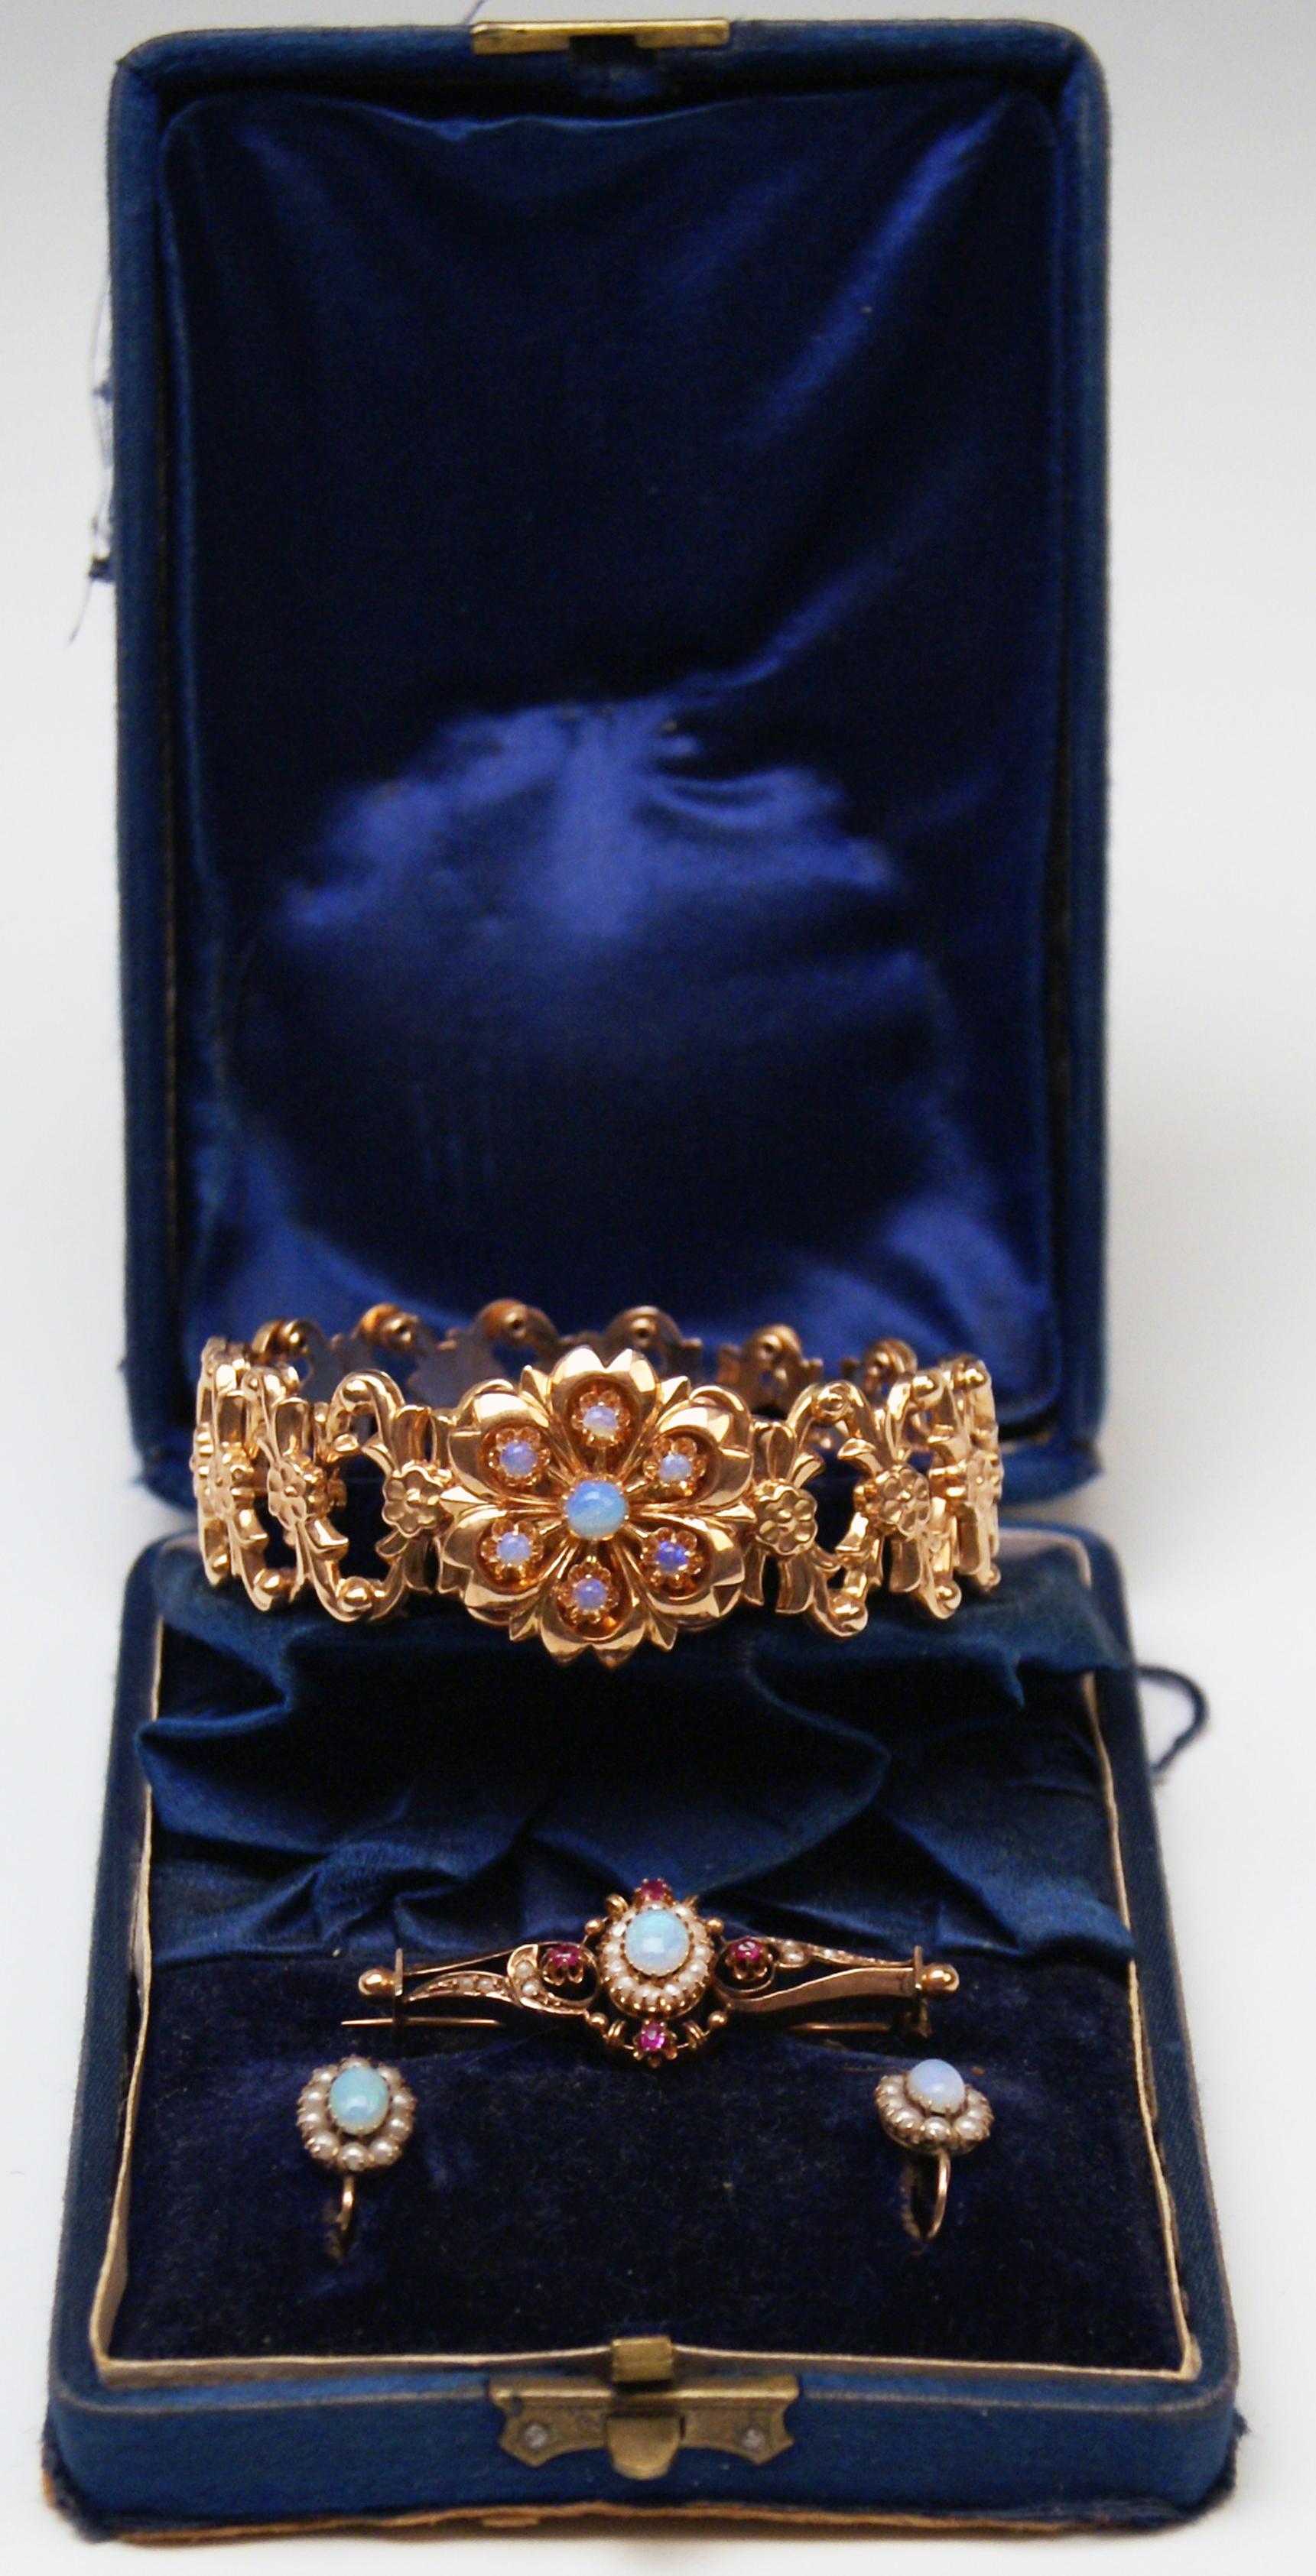 Hochviktorianisch (= Wiener Historismus)  Goldschmuck-Set,  bestehend aus:
-- 1 Armband
-- 1 Brosche
-- Paar Ohrringe

Die Teile dieses Sets sind aus 14 Karat Roségold 585 gefertigt / verziert mit:
-- Opale
-- Süßwasserperlen 
--